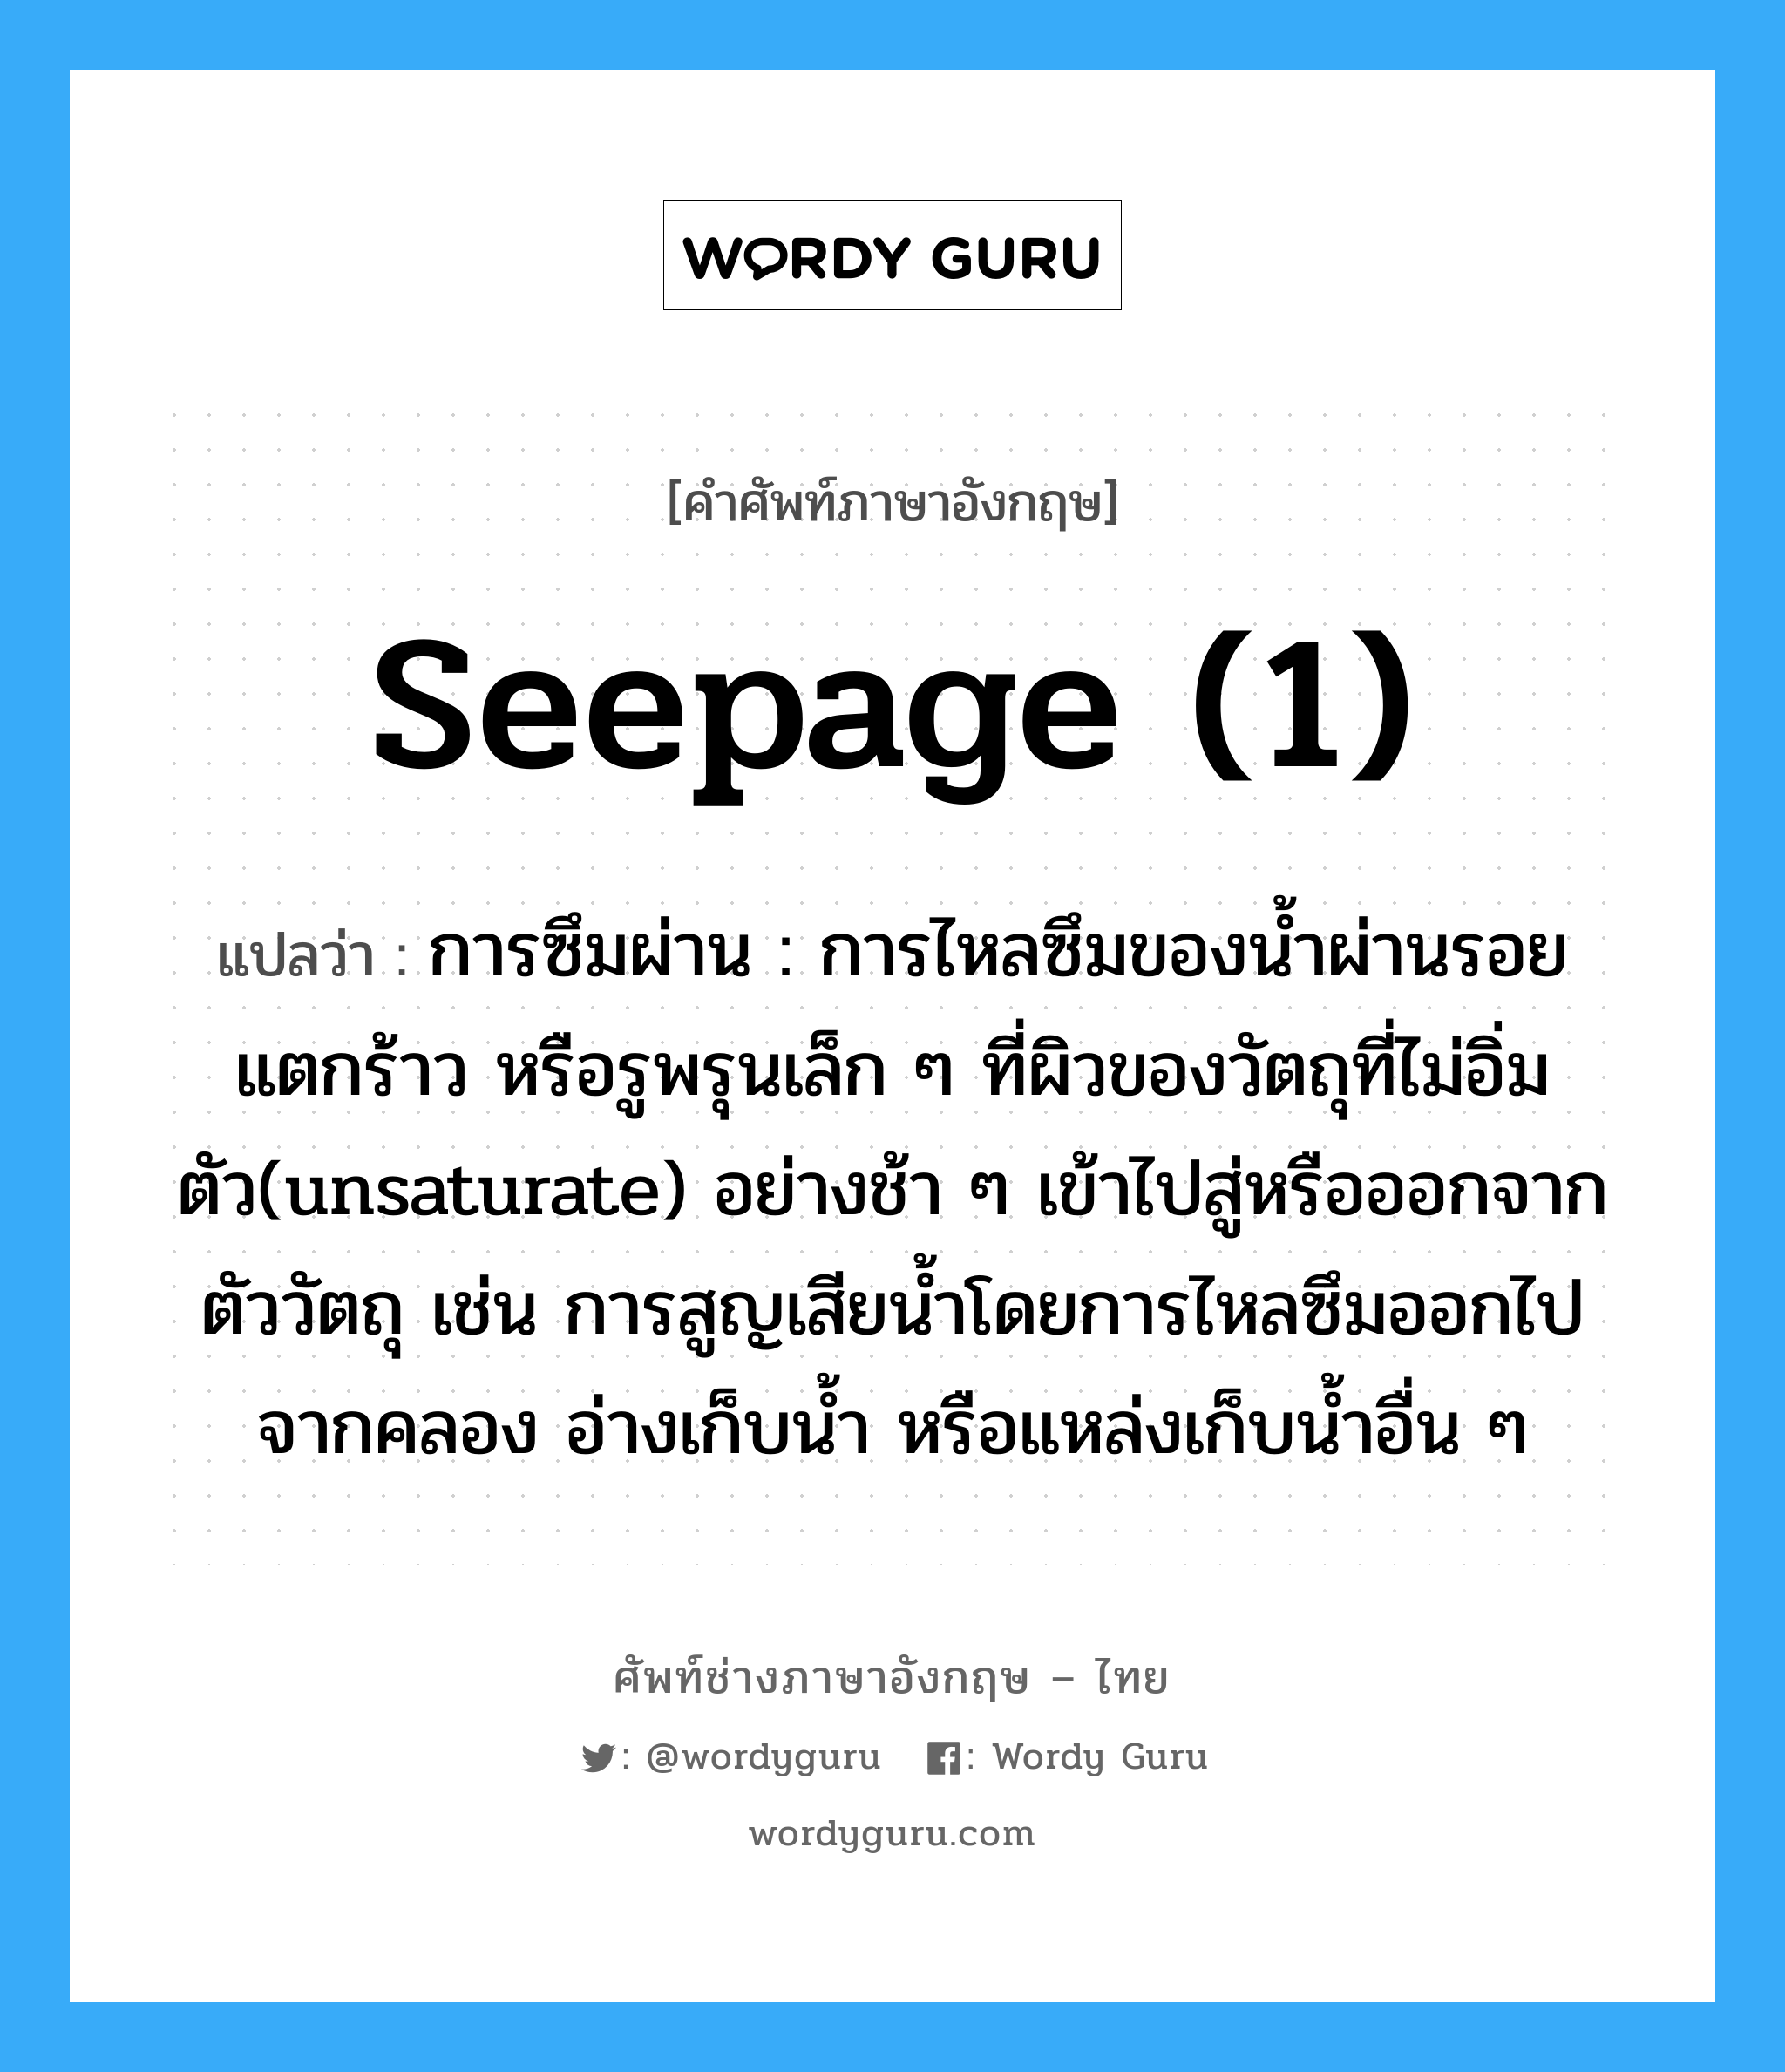 seepage (1) แปลว่า?, คำศัพท์ช่างภาษาอังกฤษ - ไทย seepage (1) คำศัพท์ภาษาอังกฤษ seepage (1) แปลว่า การซึมผ่าน : การไหลซึมของน้ำผ่านรอยแตกร้าว หรือรูพรุนเล็ก ๆ ที่ผิวของวัตถุที่ไม่อิ่มตัว(unsaturate) อย่างช้า ๆ เข้าไปสู่หรือออกจากตัววัตถุ เช่น การสูญเสียน้ำโดยการไหลซึมออกไปจากคลอง อ่างเก็บน้ำ หรือแหล่งเก็บน้ำอื่น ๆ